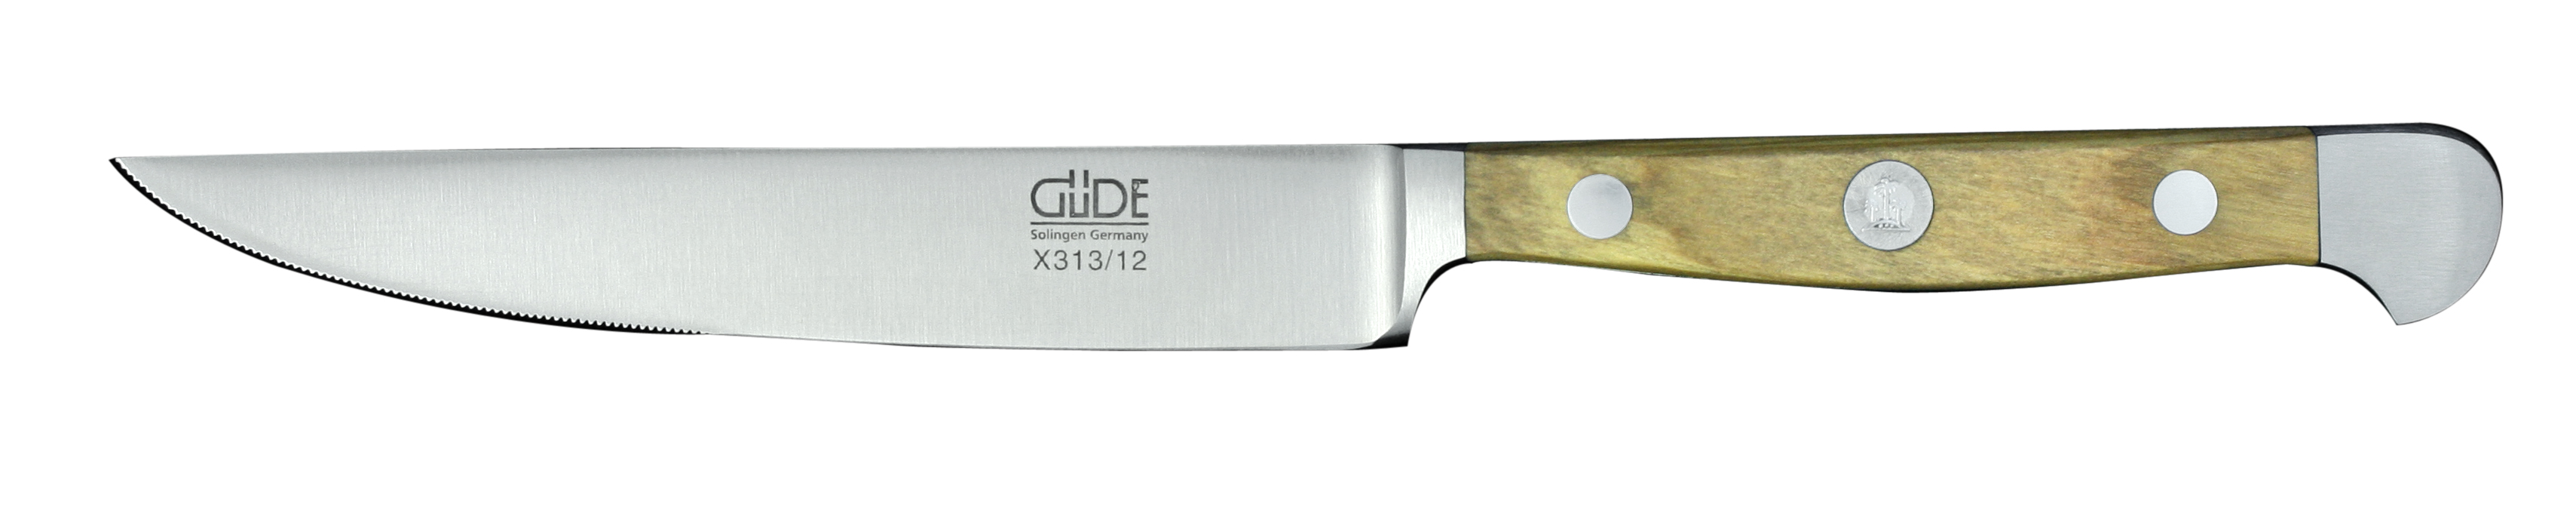 Güde Alpha Olive Steakmesser 12 cm / CVM-Messerstahl mit Griffschalen aus Olivenholz